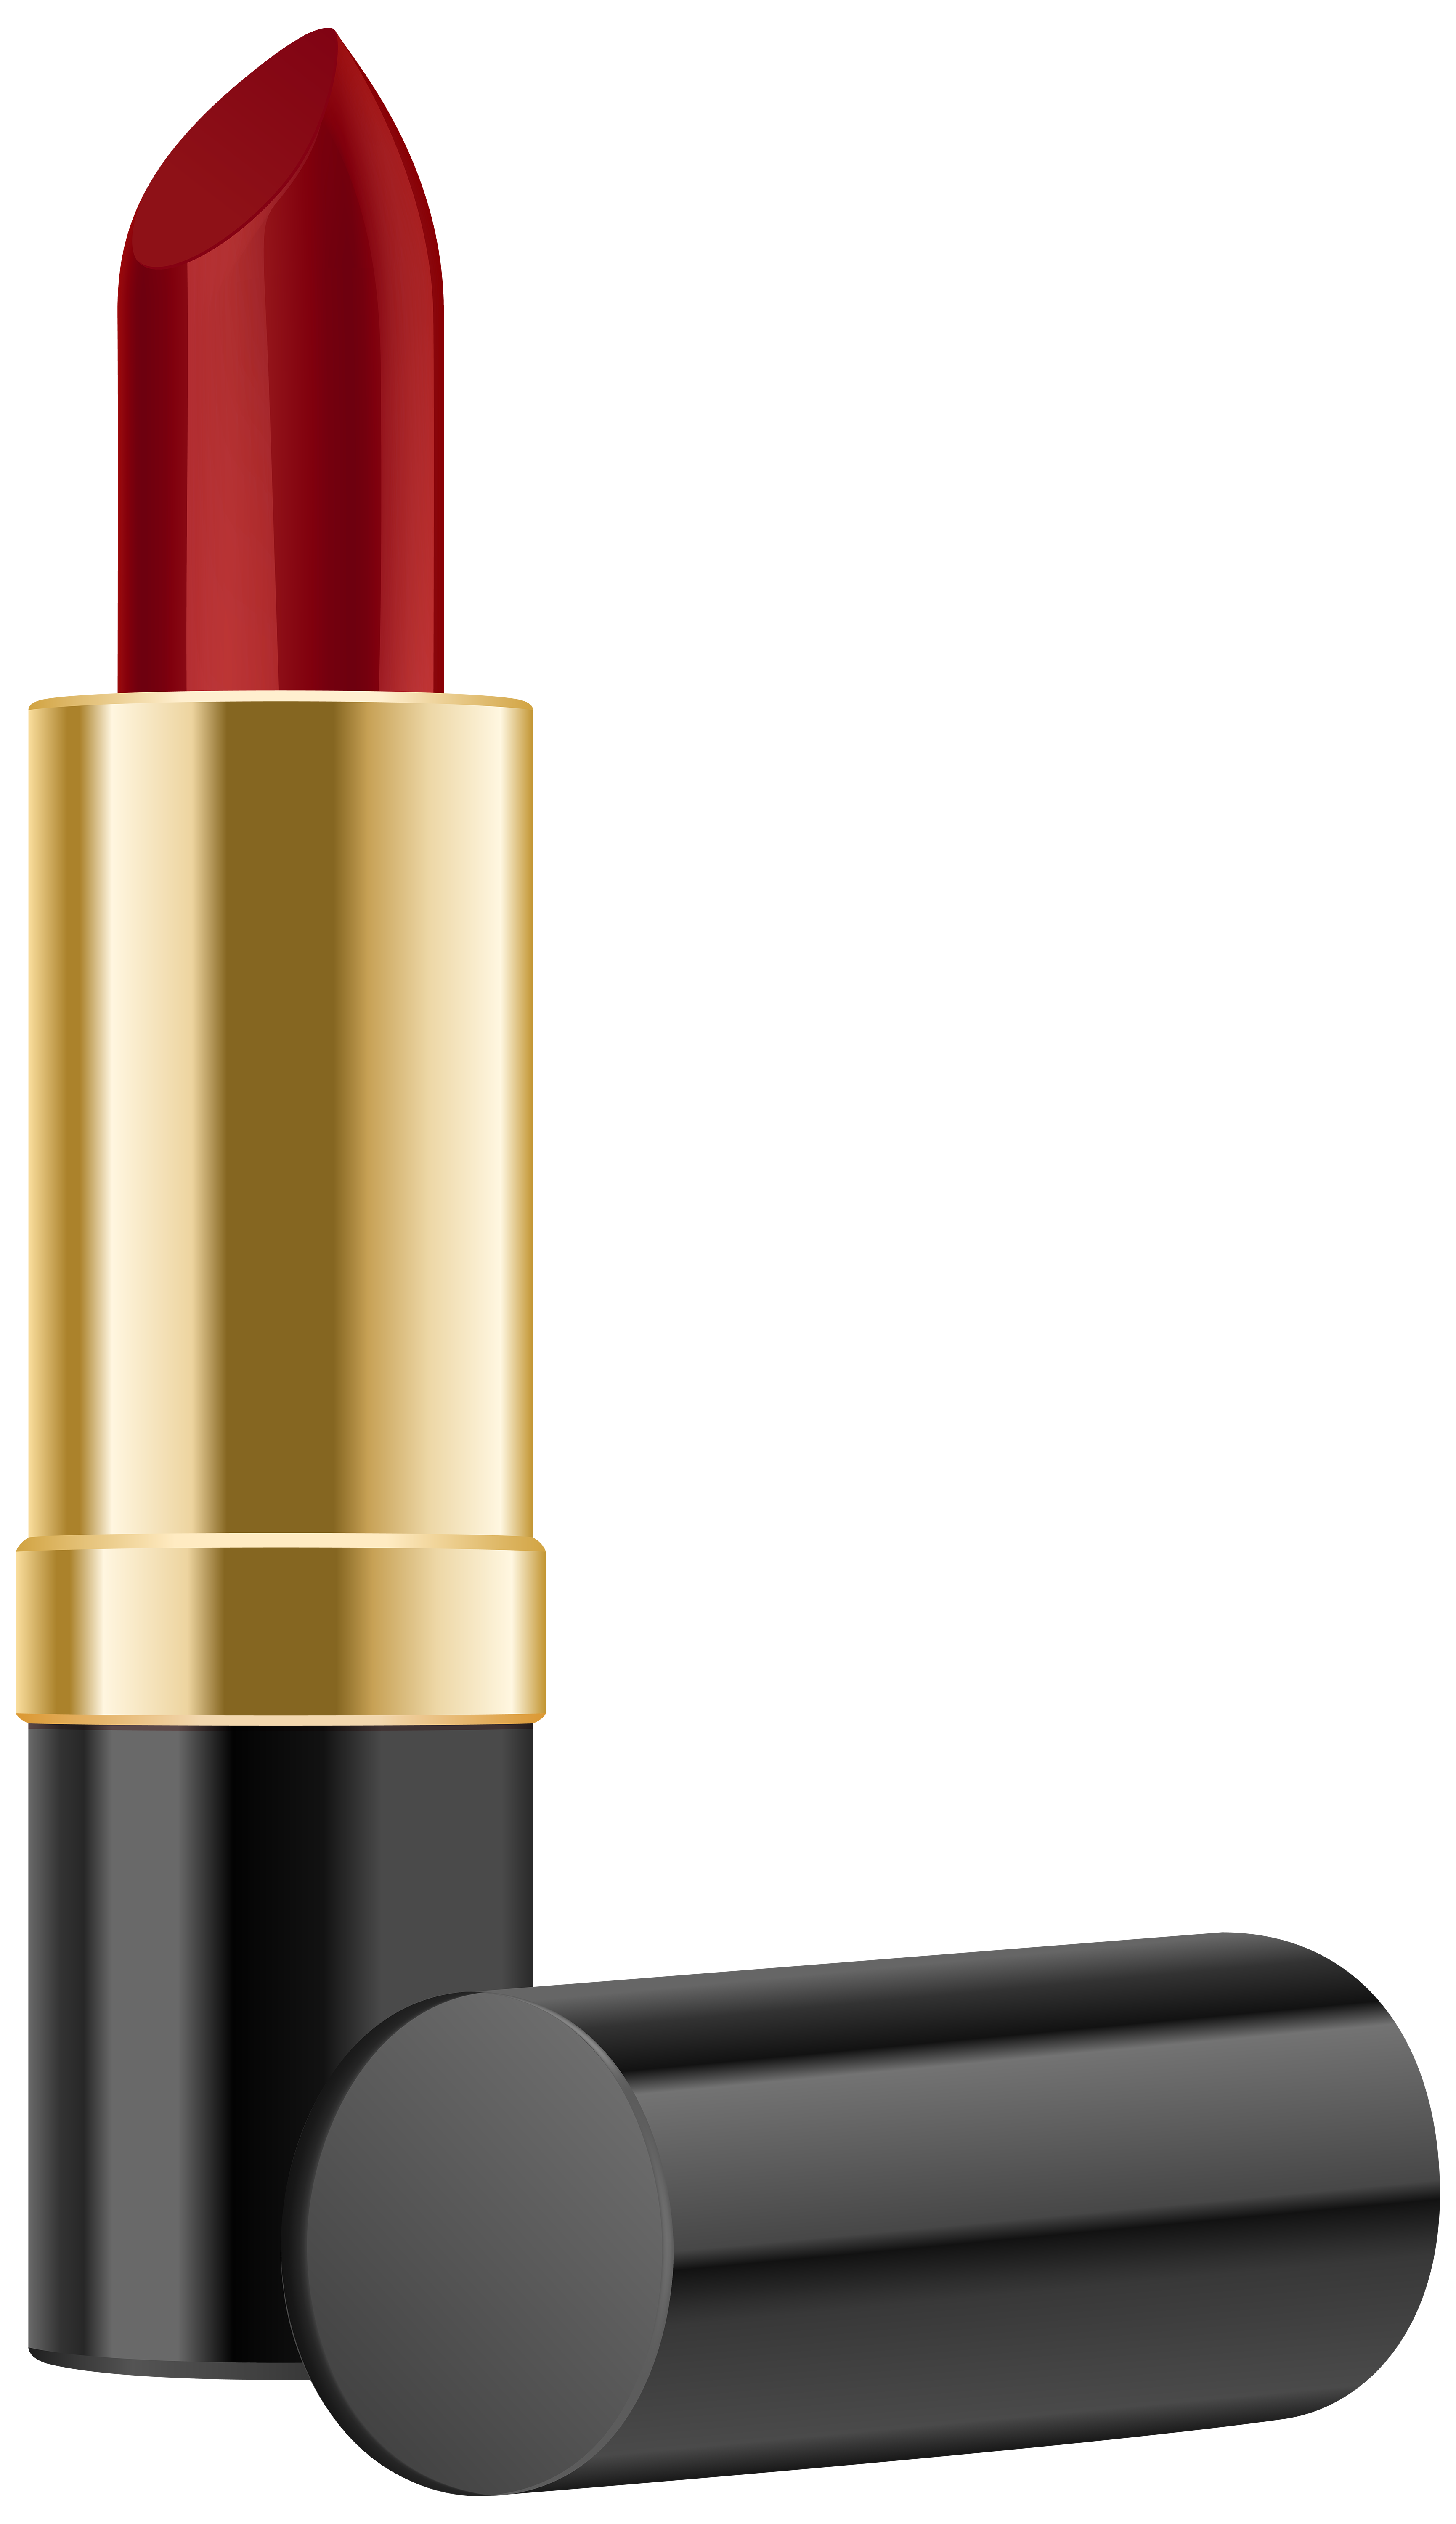 Lipstick clip art image